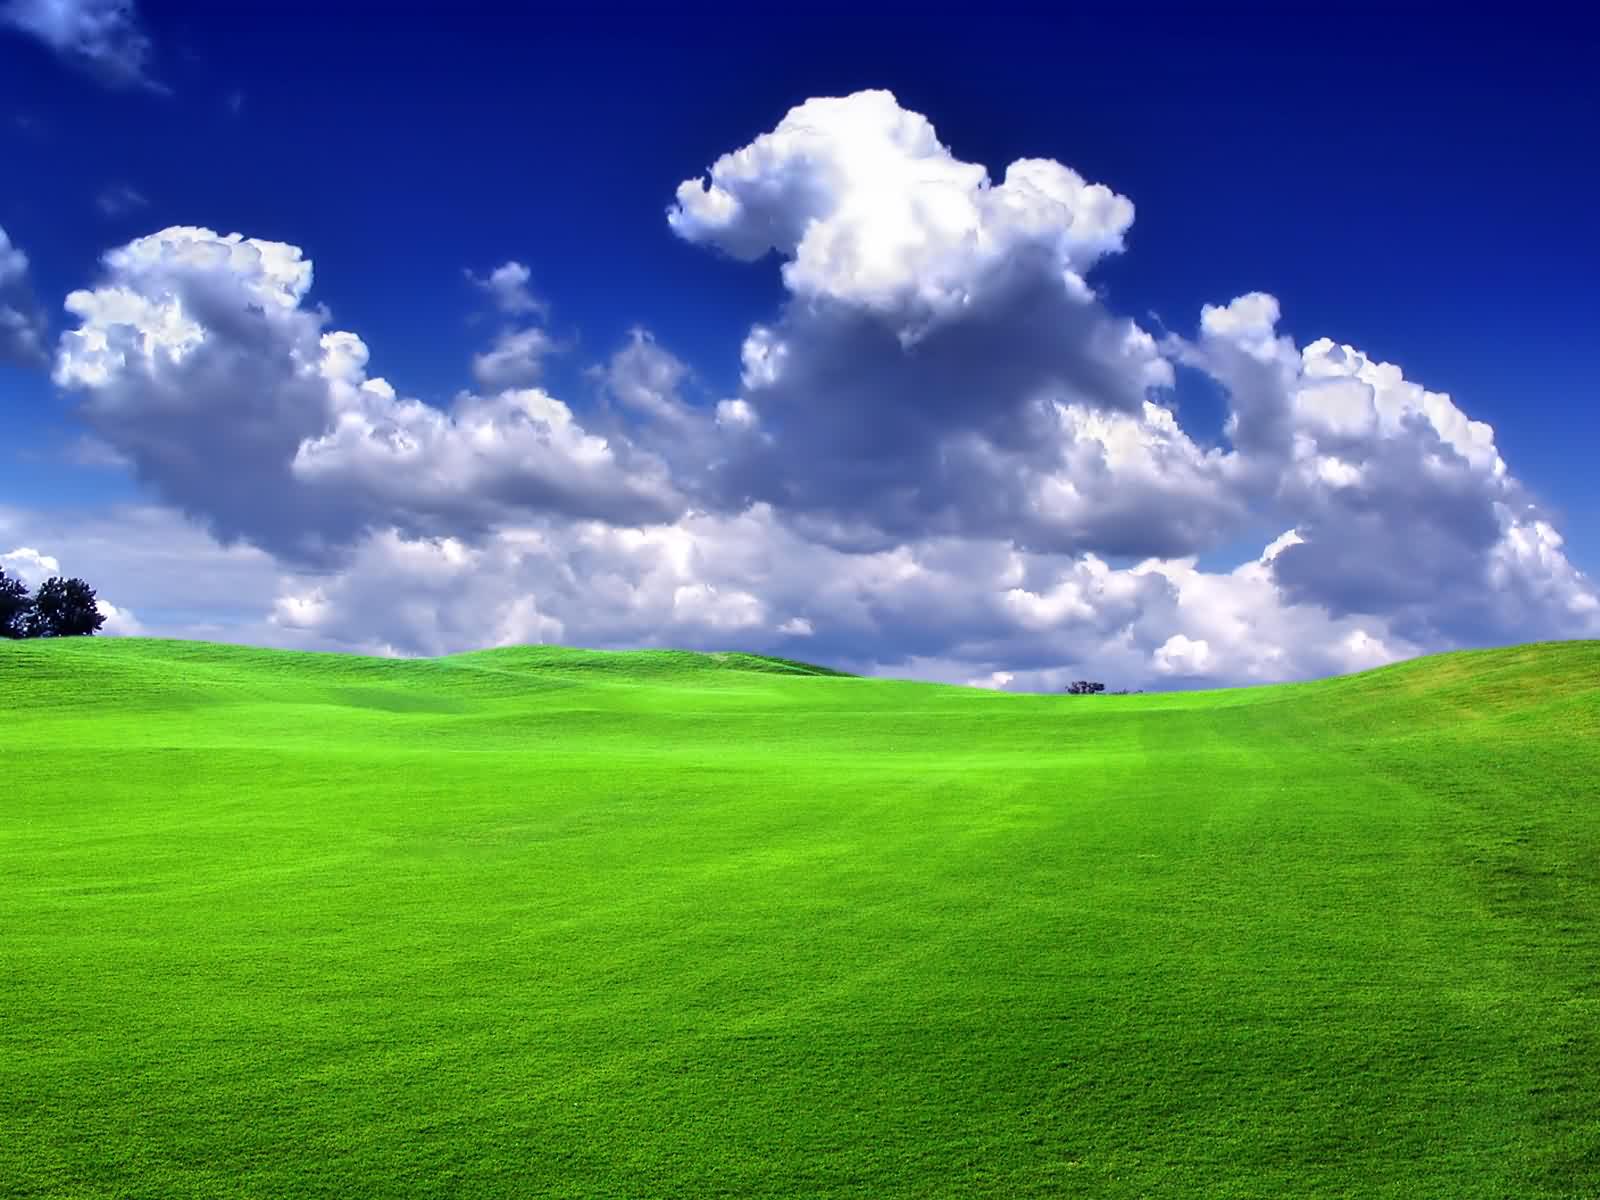 Green field wallpaper. Green field